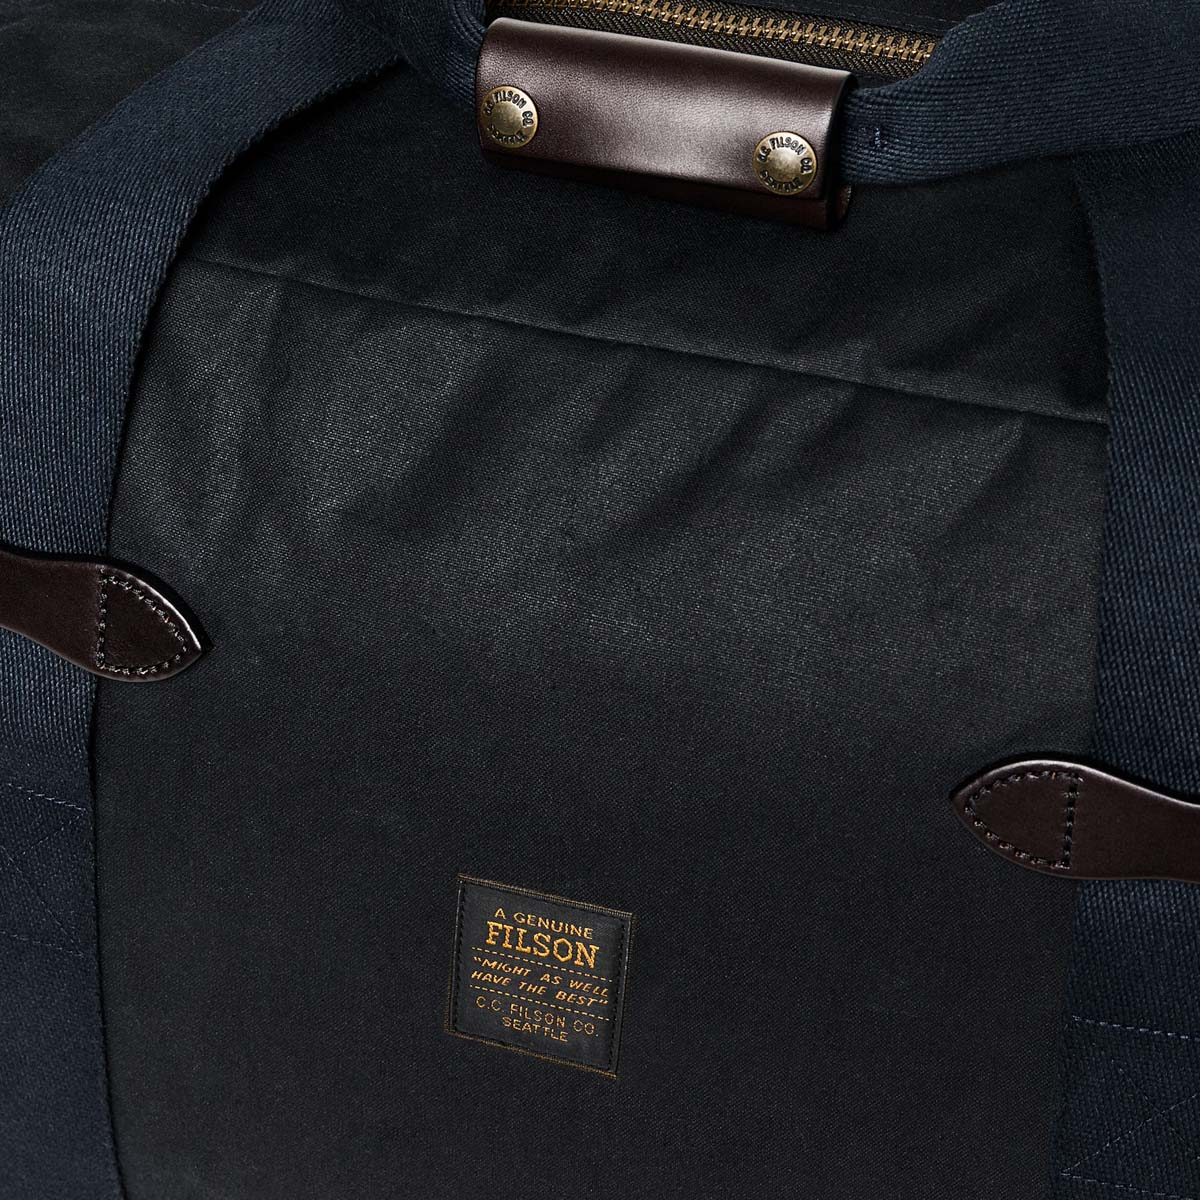 Filson Tin Cloth Small Duffle Bag Navy, Ein kompakter Duffle aus gewachster Baumwolle, der für Übernachtungsreisen geeignet ist.